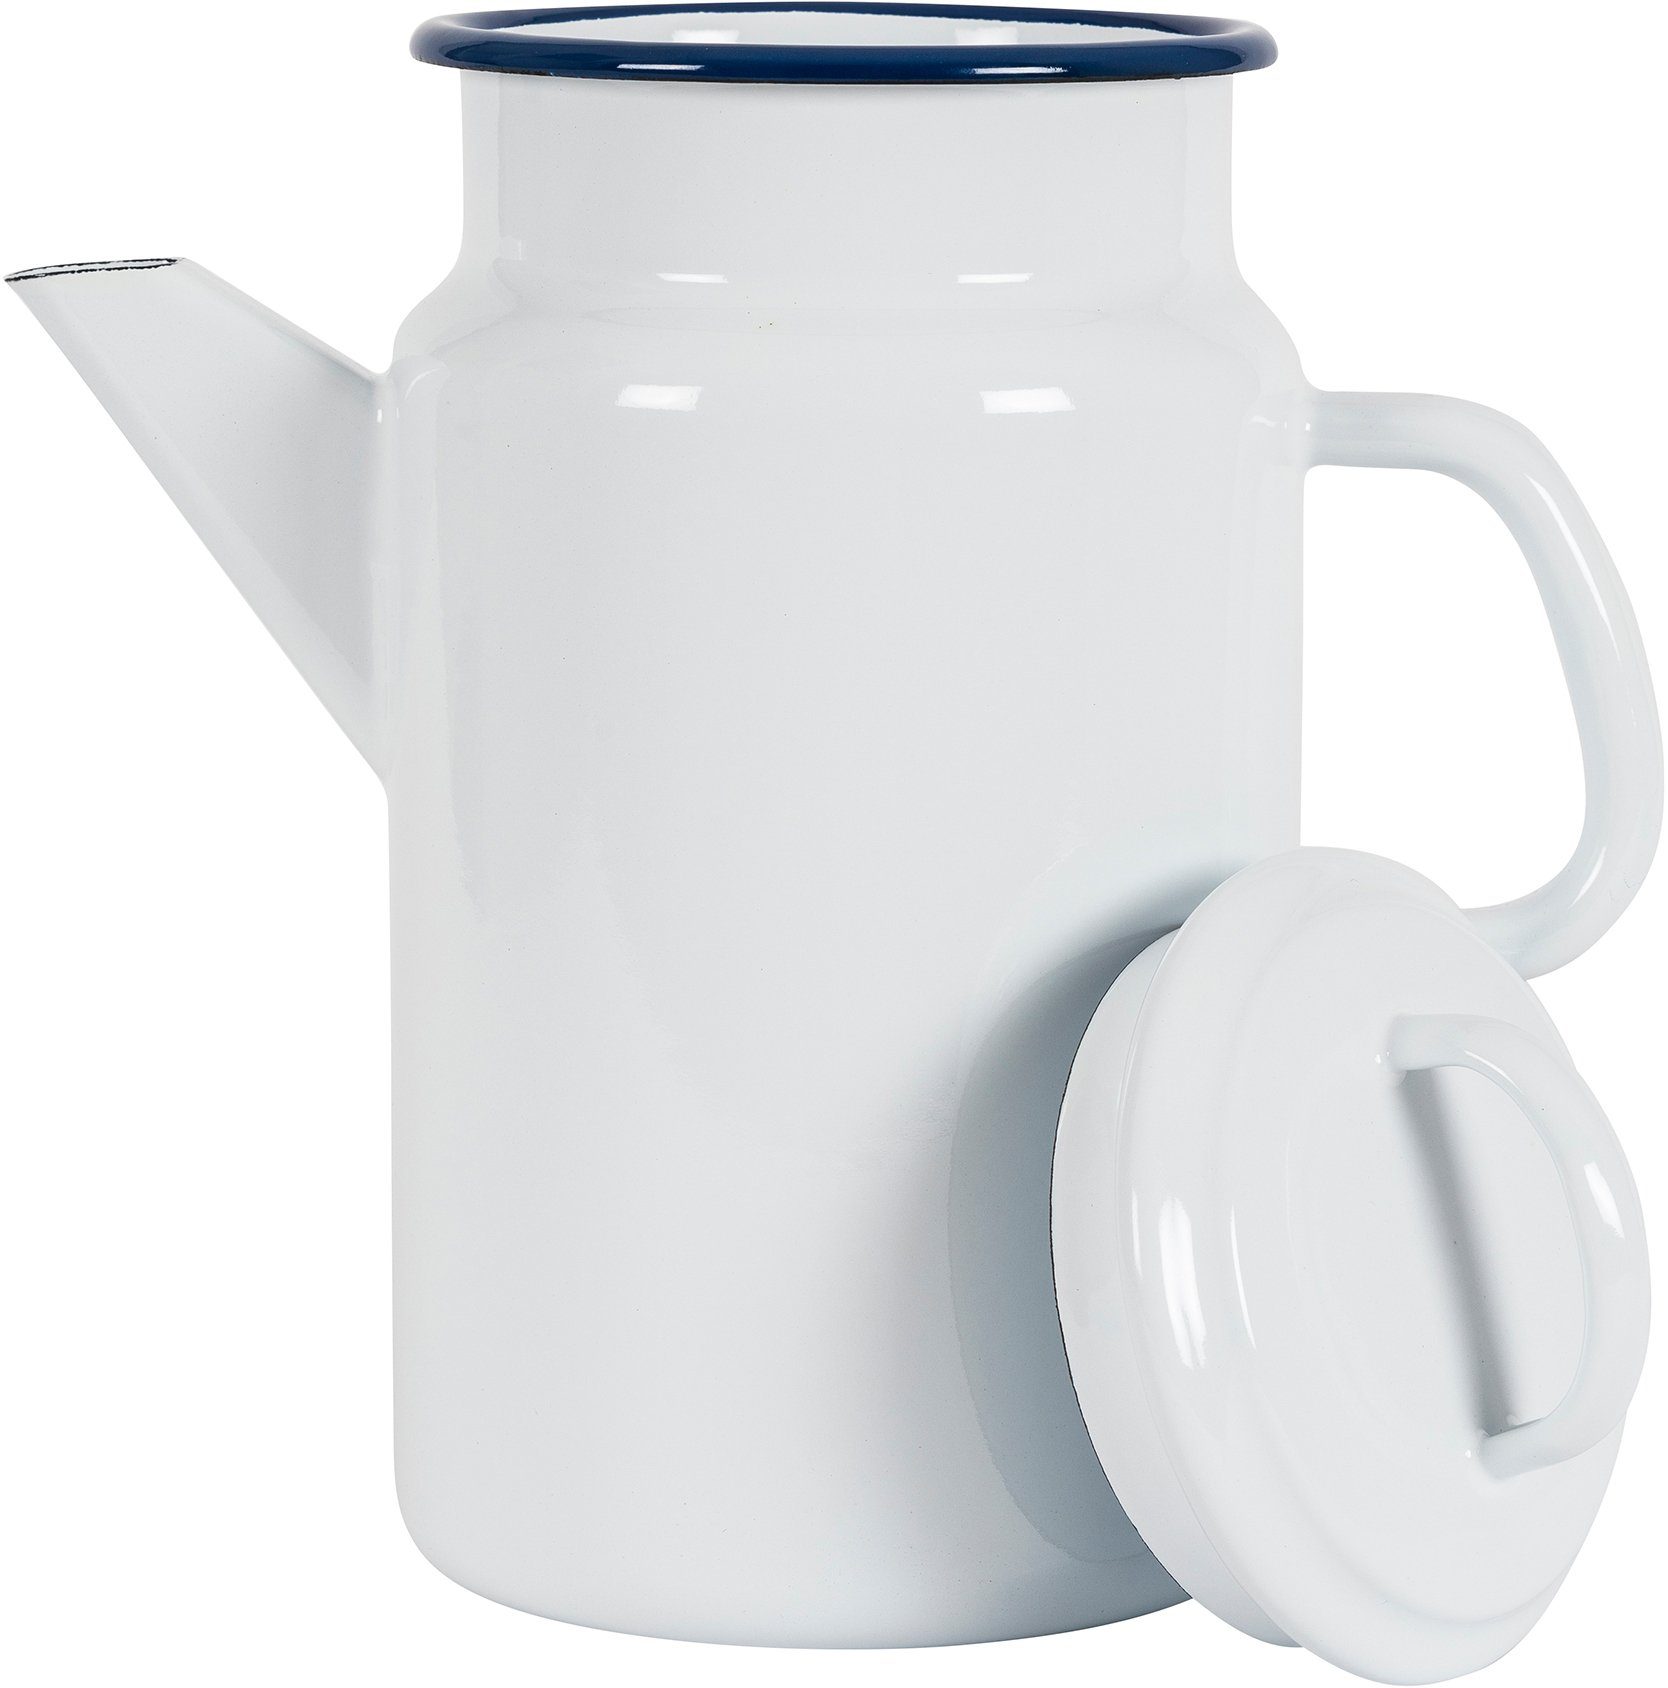 KOCKUMS® Teekanne Nachhaltigkeit Retro-Design 2 in vereint Emaille, einer Teekanne Jernverk, weiß l, und